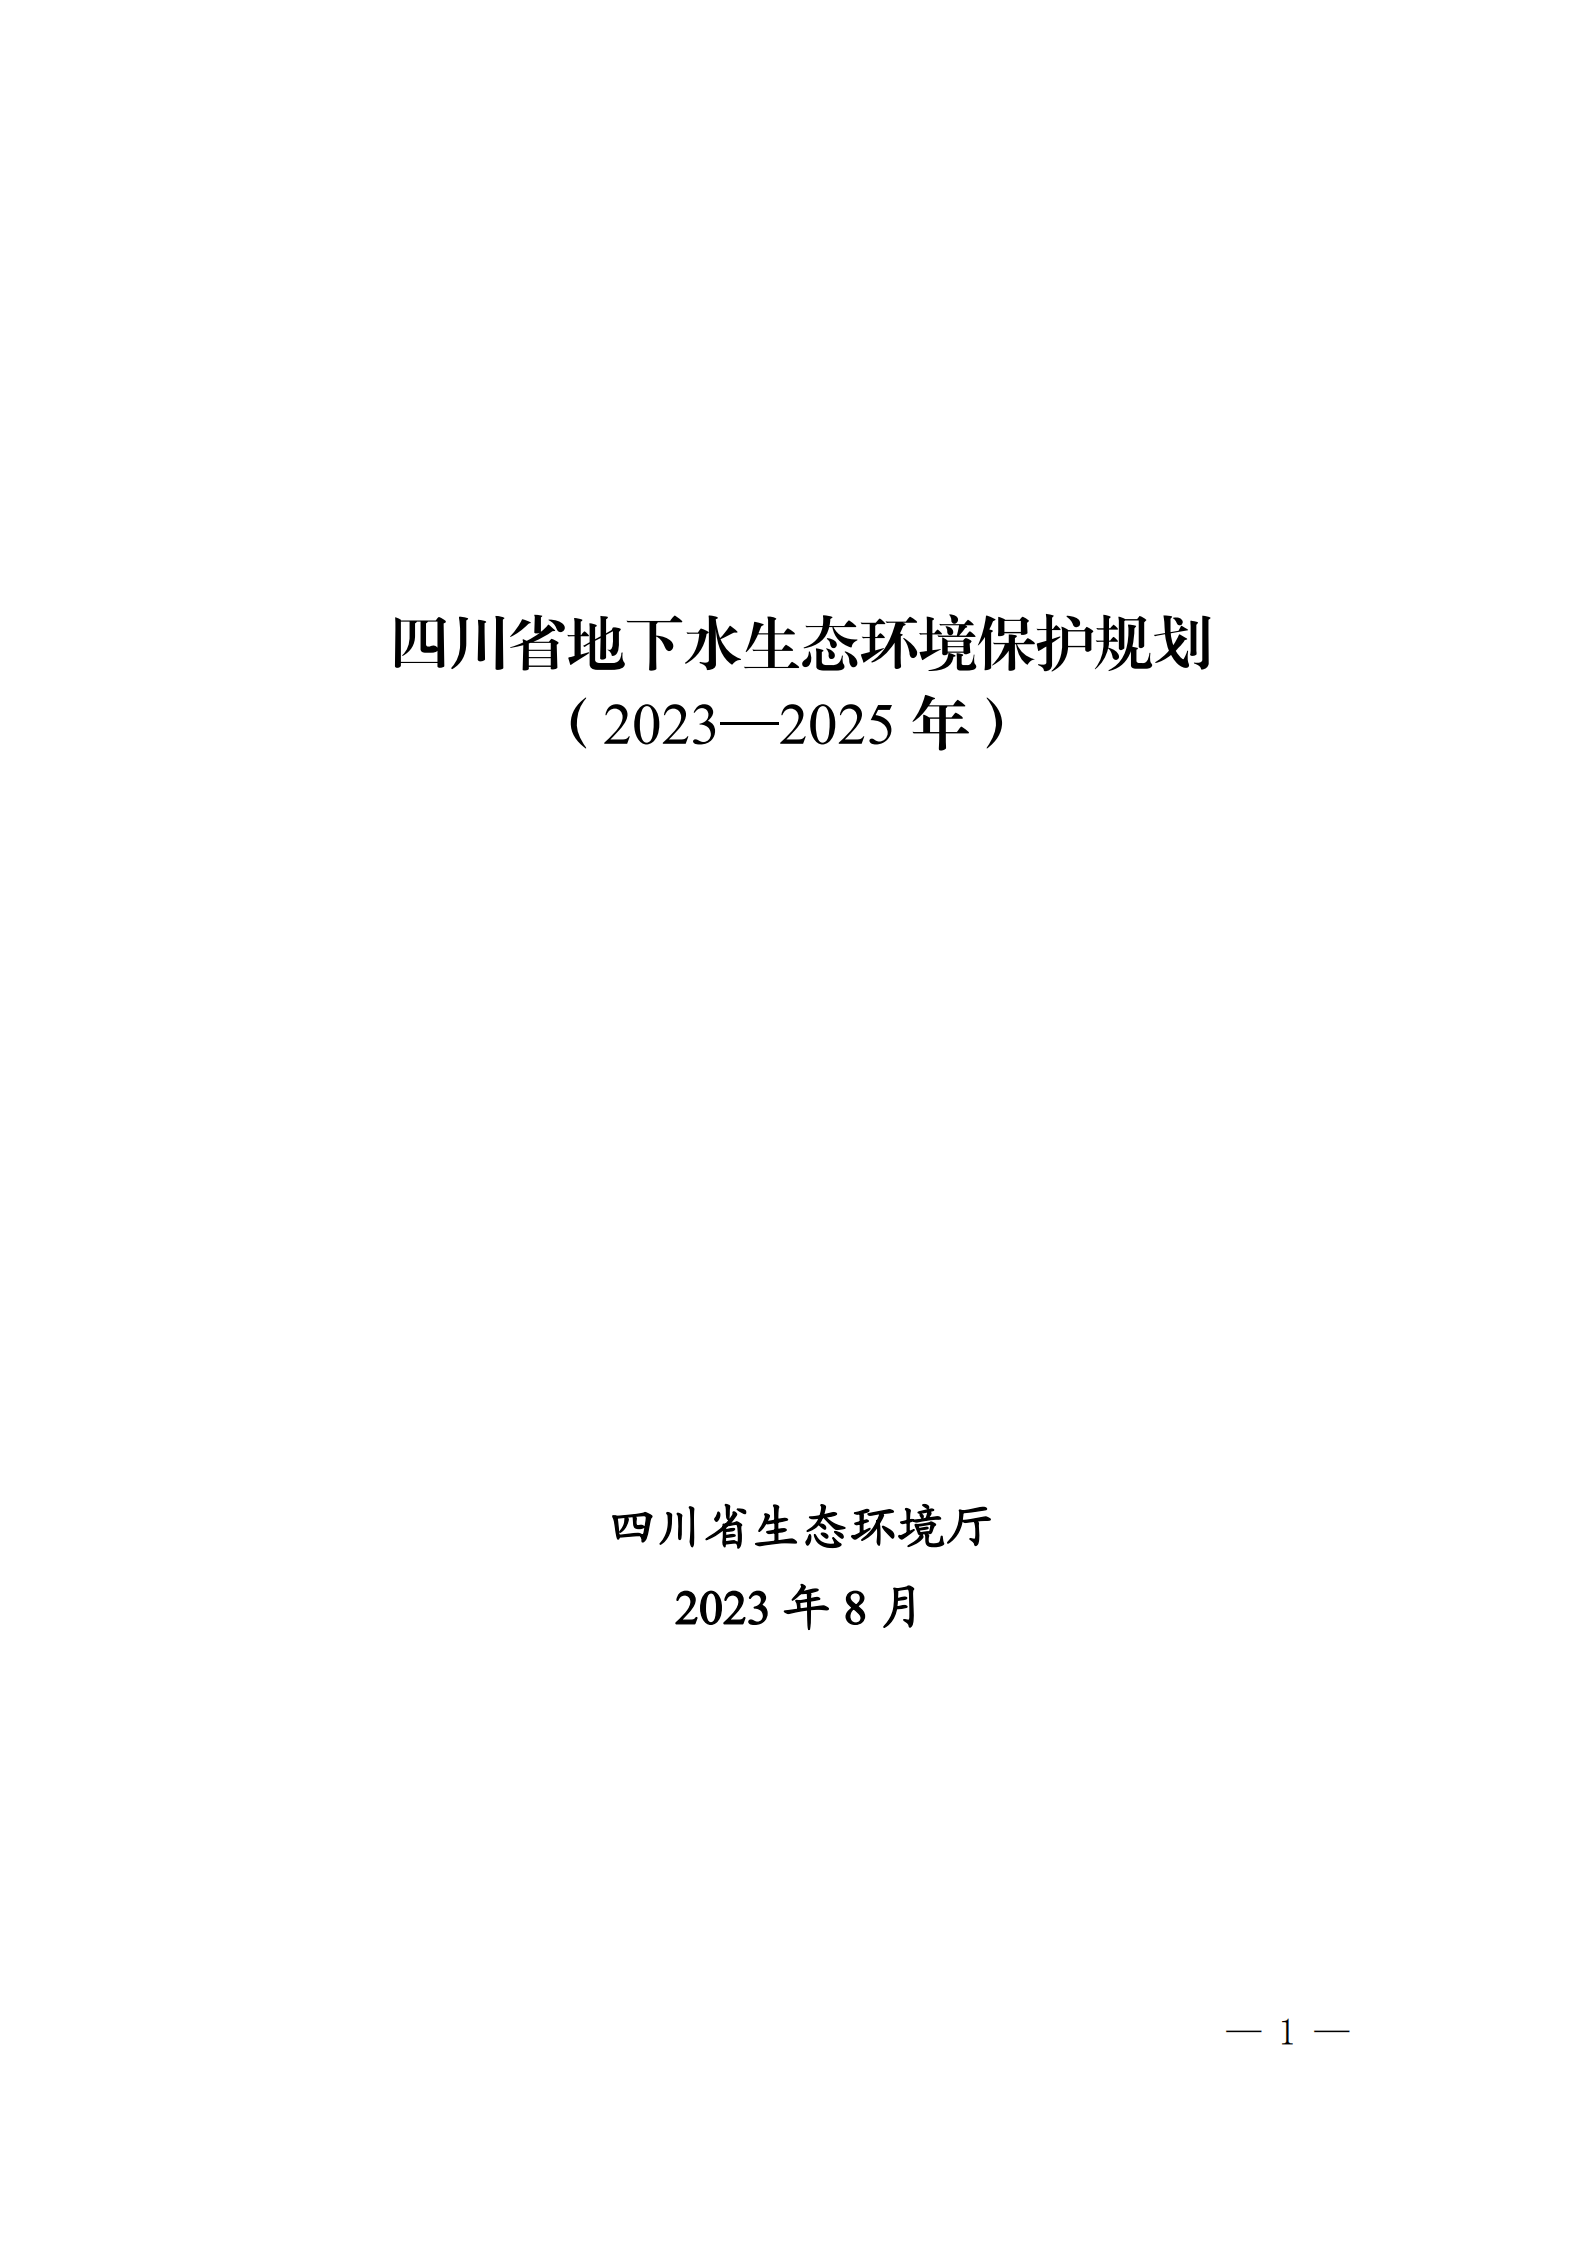 《四川省地下水生态环境保护规划（2023—2025年）》_00